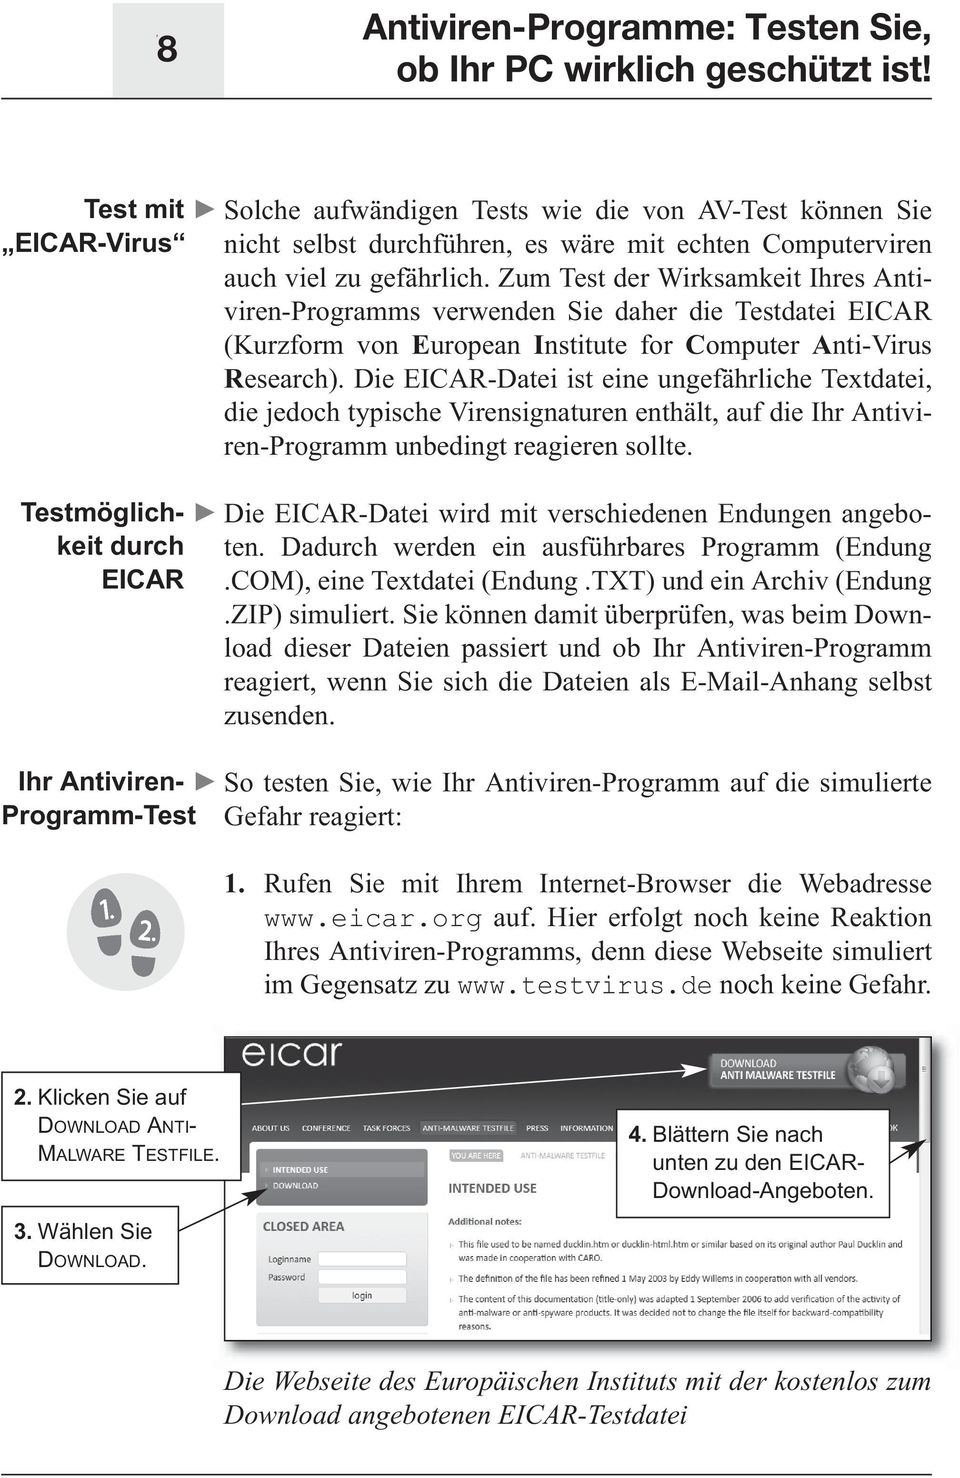 Zum Test der Wirksamkeit Ihres Antiviren-Programms verwenden Sie daher die Testdatei EICAR (Kurzform von European Institute for Computer Anti-Virus Research).